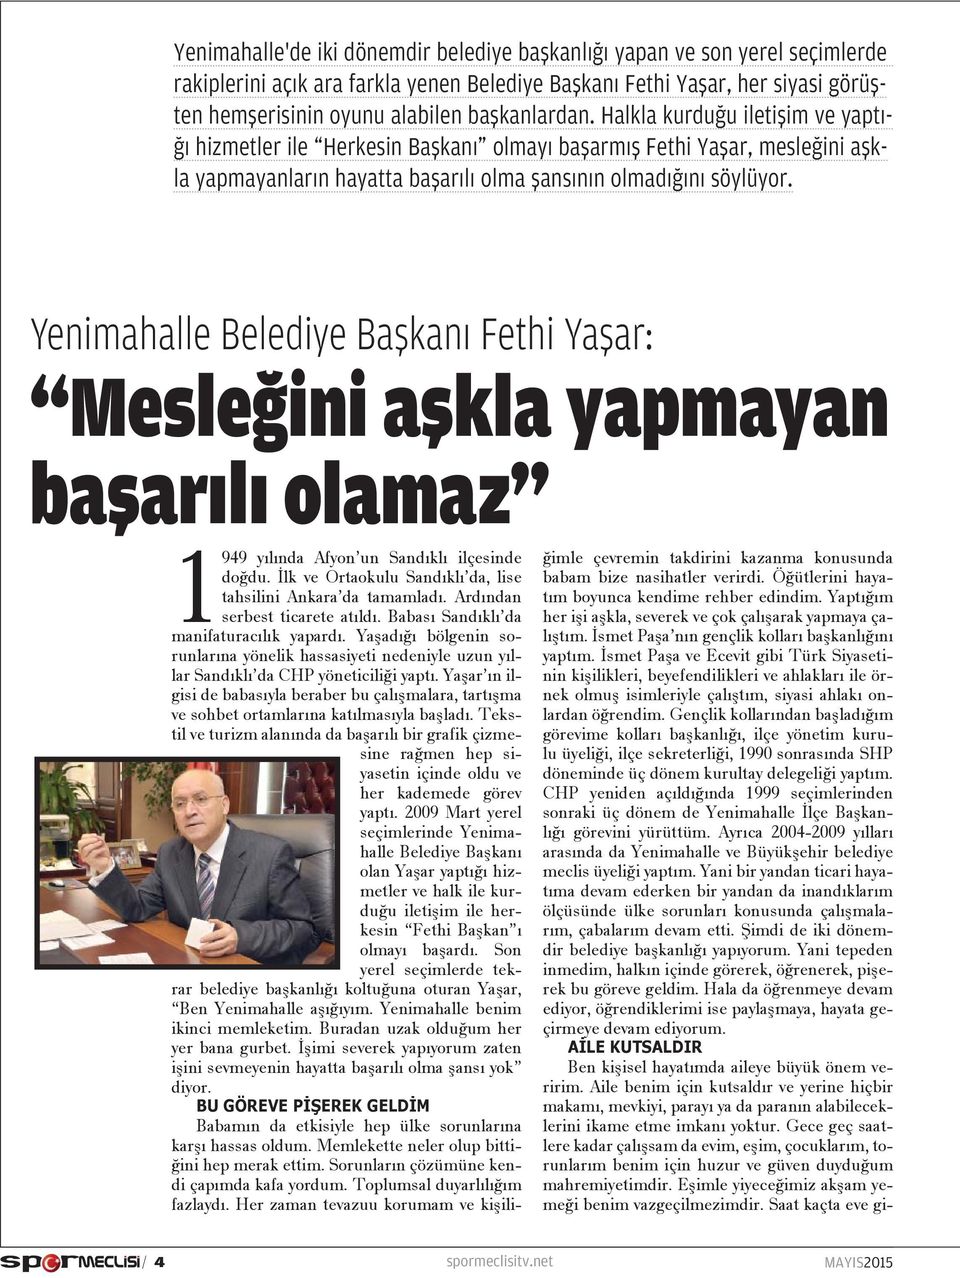 Yenimahalle Belediye Başkanı Fethi Yaşar: Mesleğini aşkla yapmayan başarılı olamaz 1949 yılında Afyon un Sandıklı ilçesinde doğdu. İlk ve Ortaokulu Sandıklı da, lise tahsilini Ankara da tamamladı.